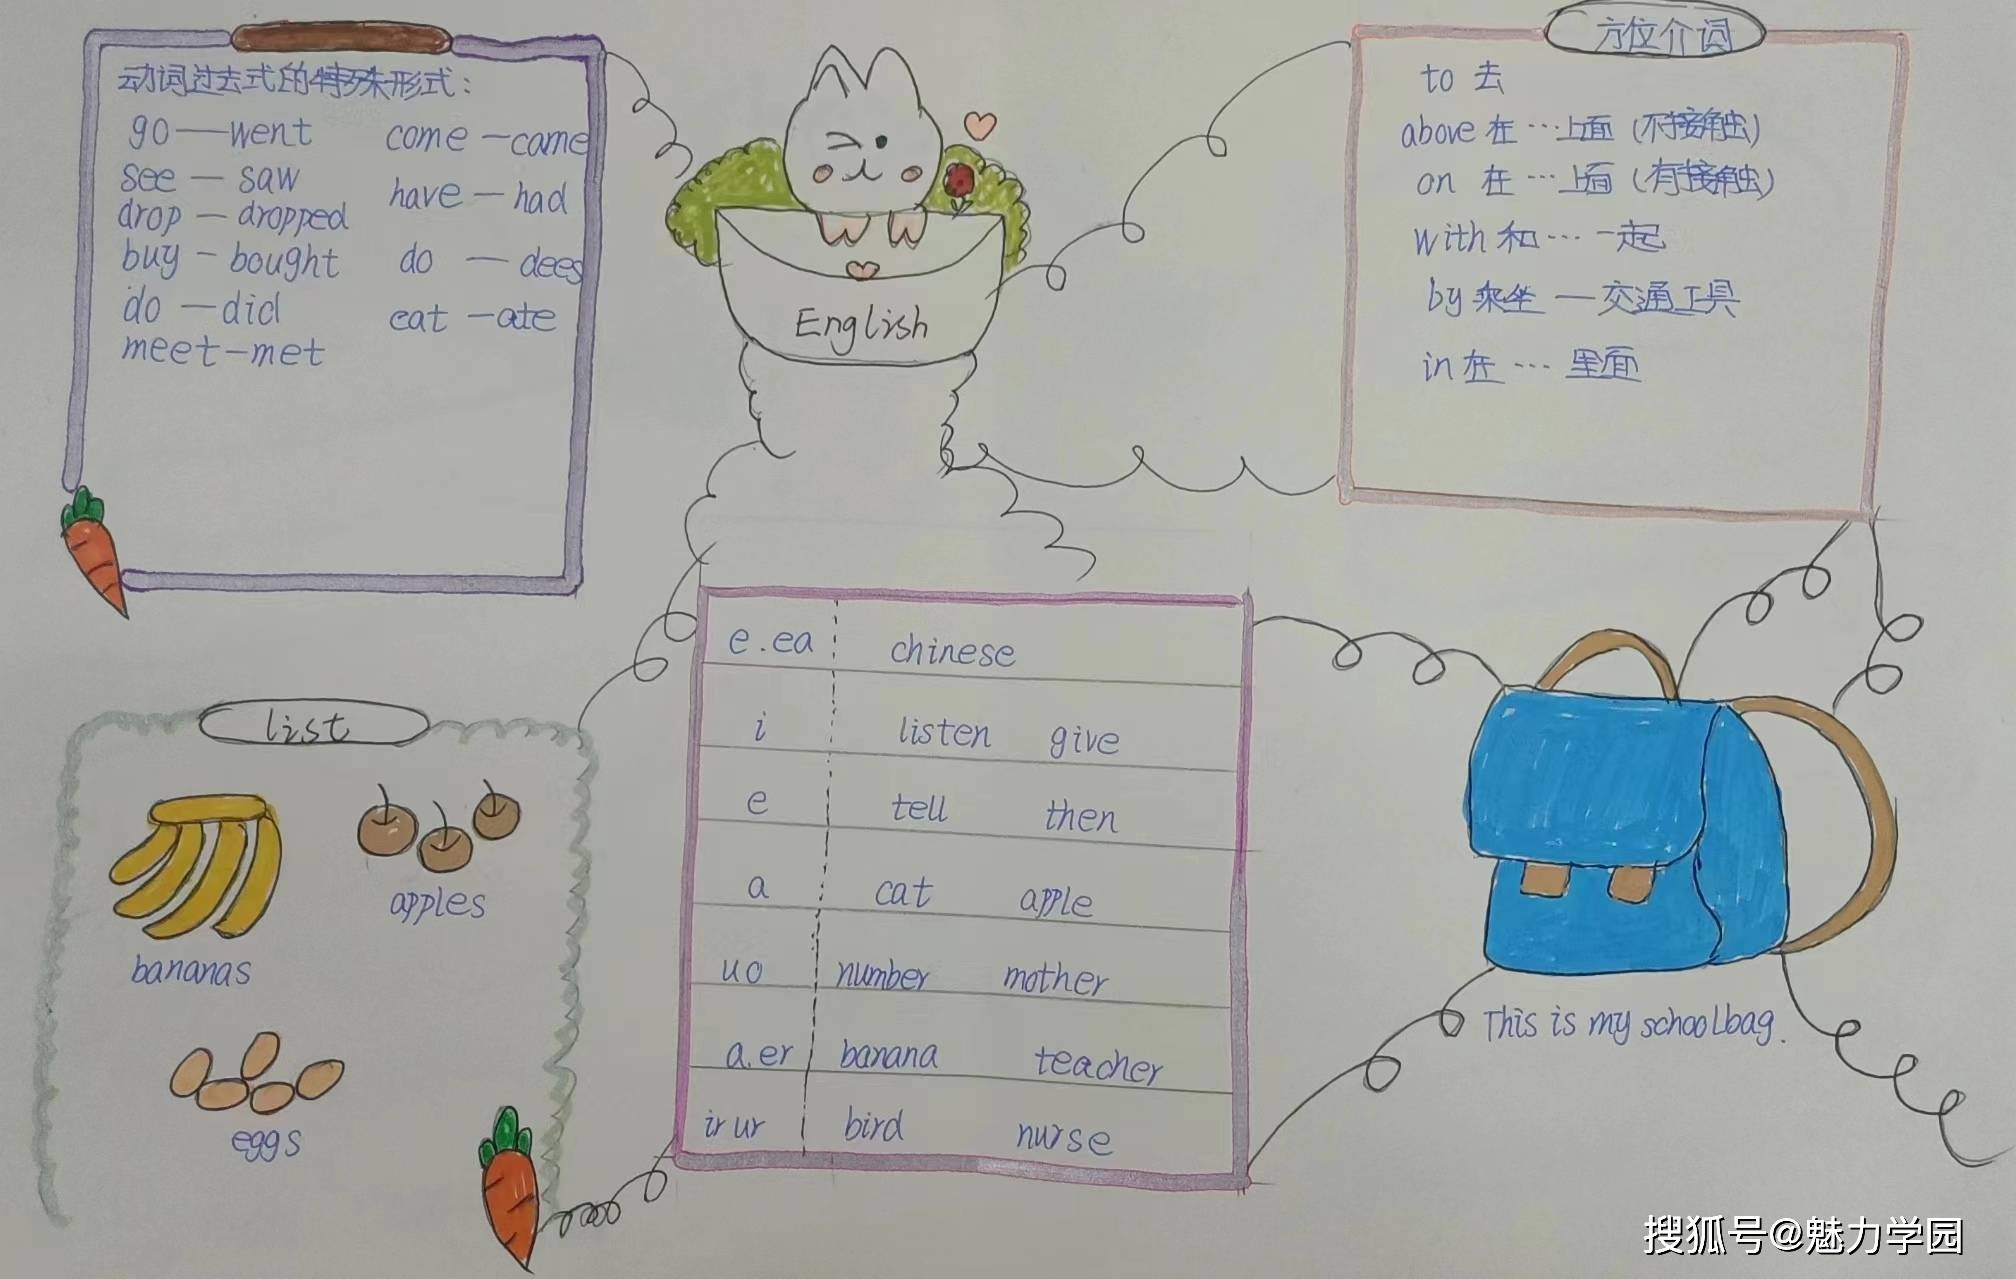 聚焦思维,导图引航——唐河县第五小学寒假英语创新实践活动